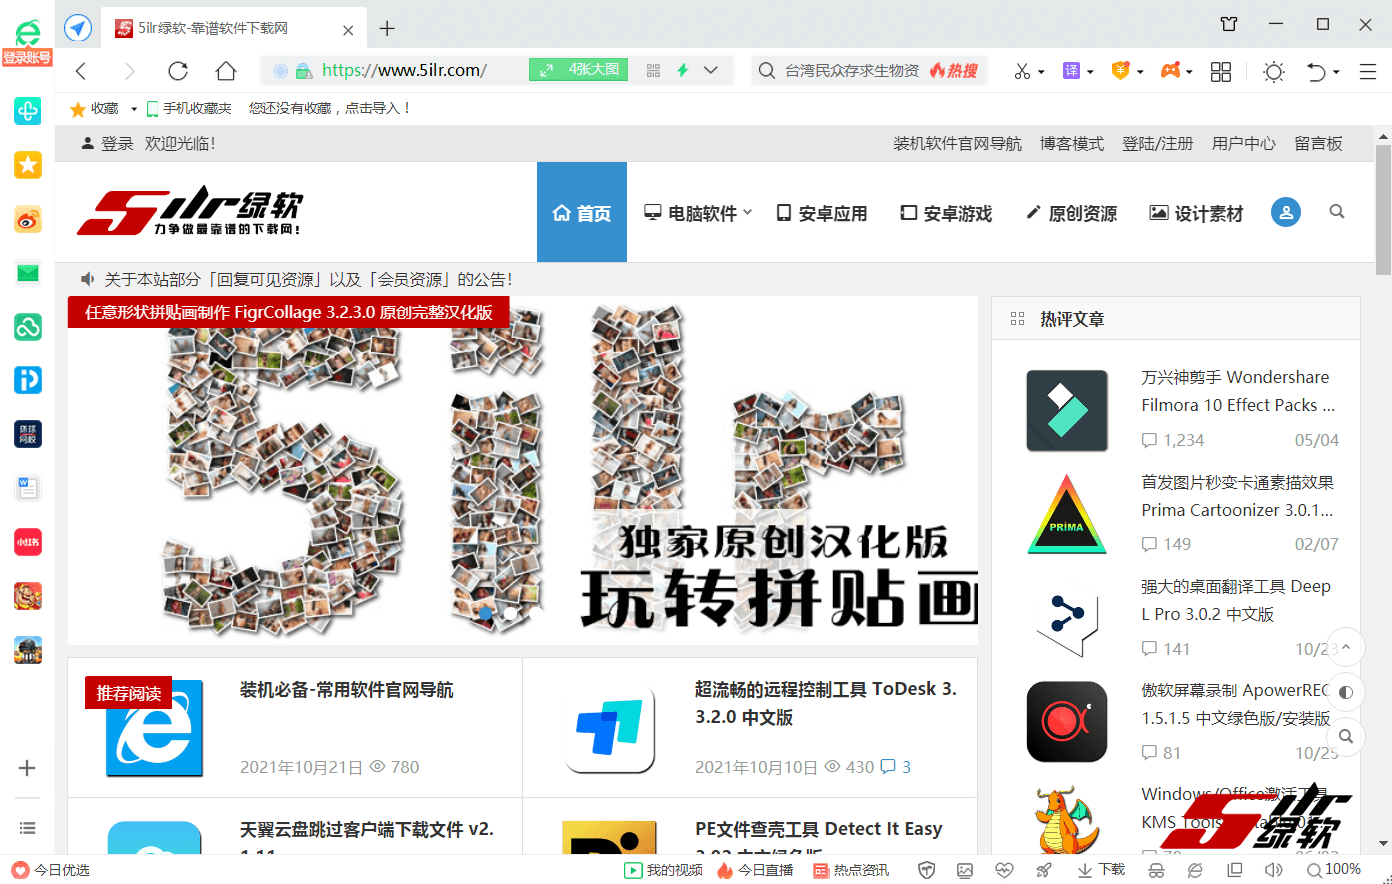 360安全浏览器 360SE 13.1.5360.0 中文版